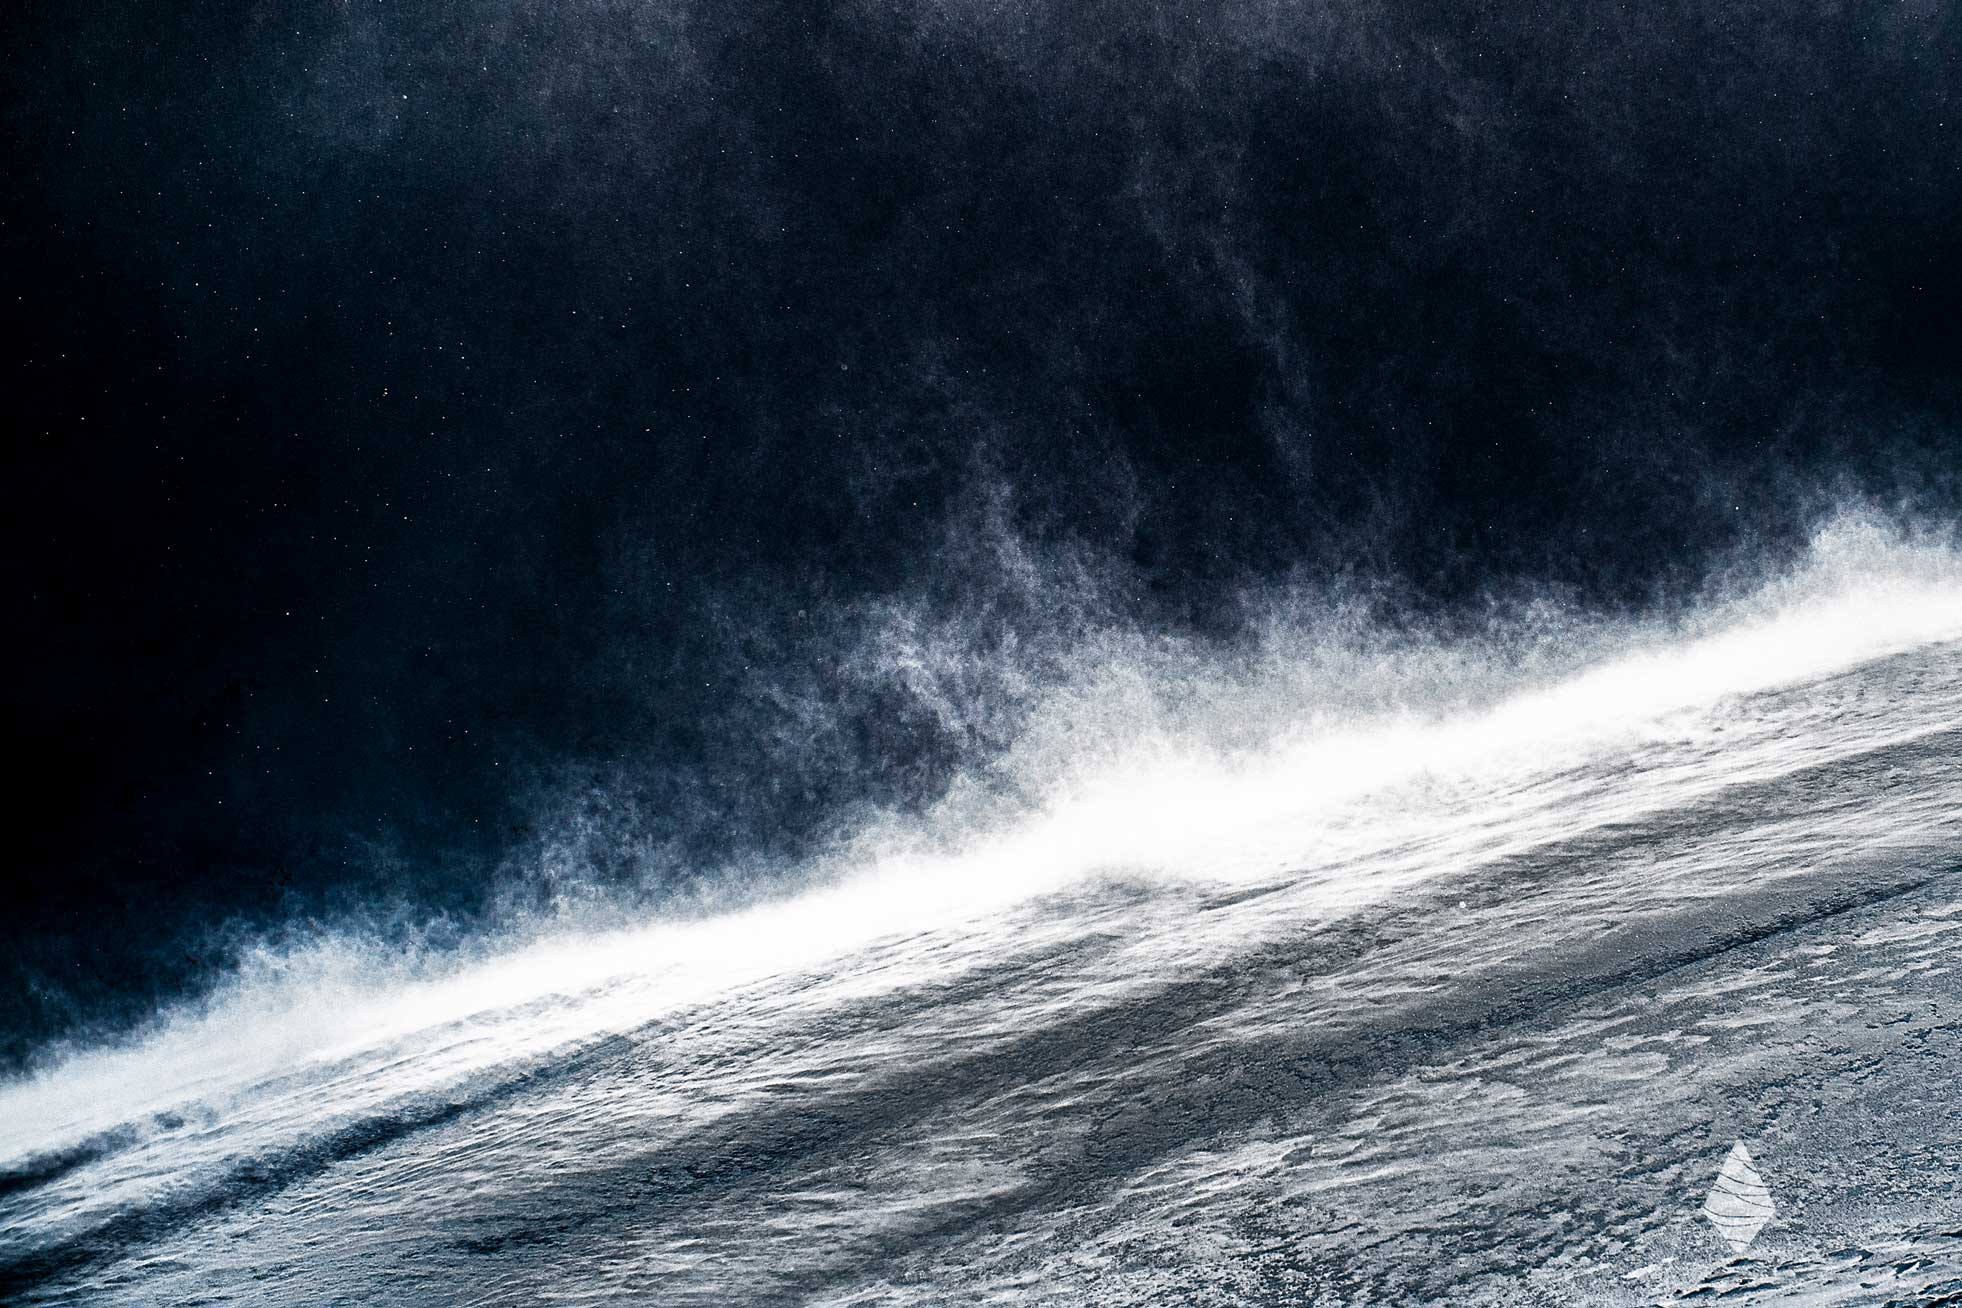 Tirage photo abstraite avec du blizzard soulevant de la neige en montagne